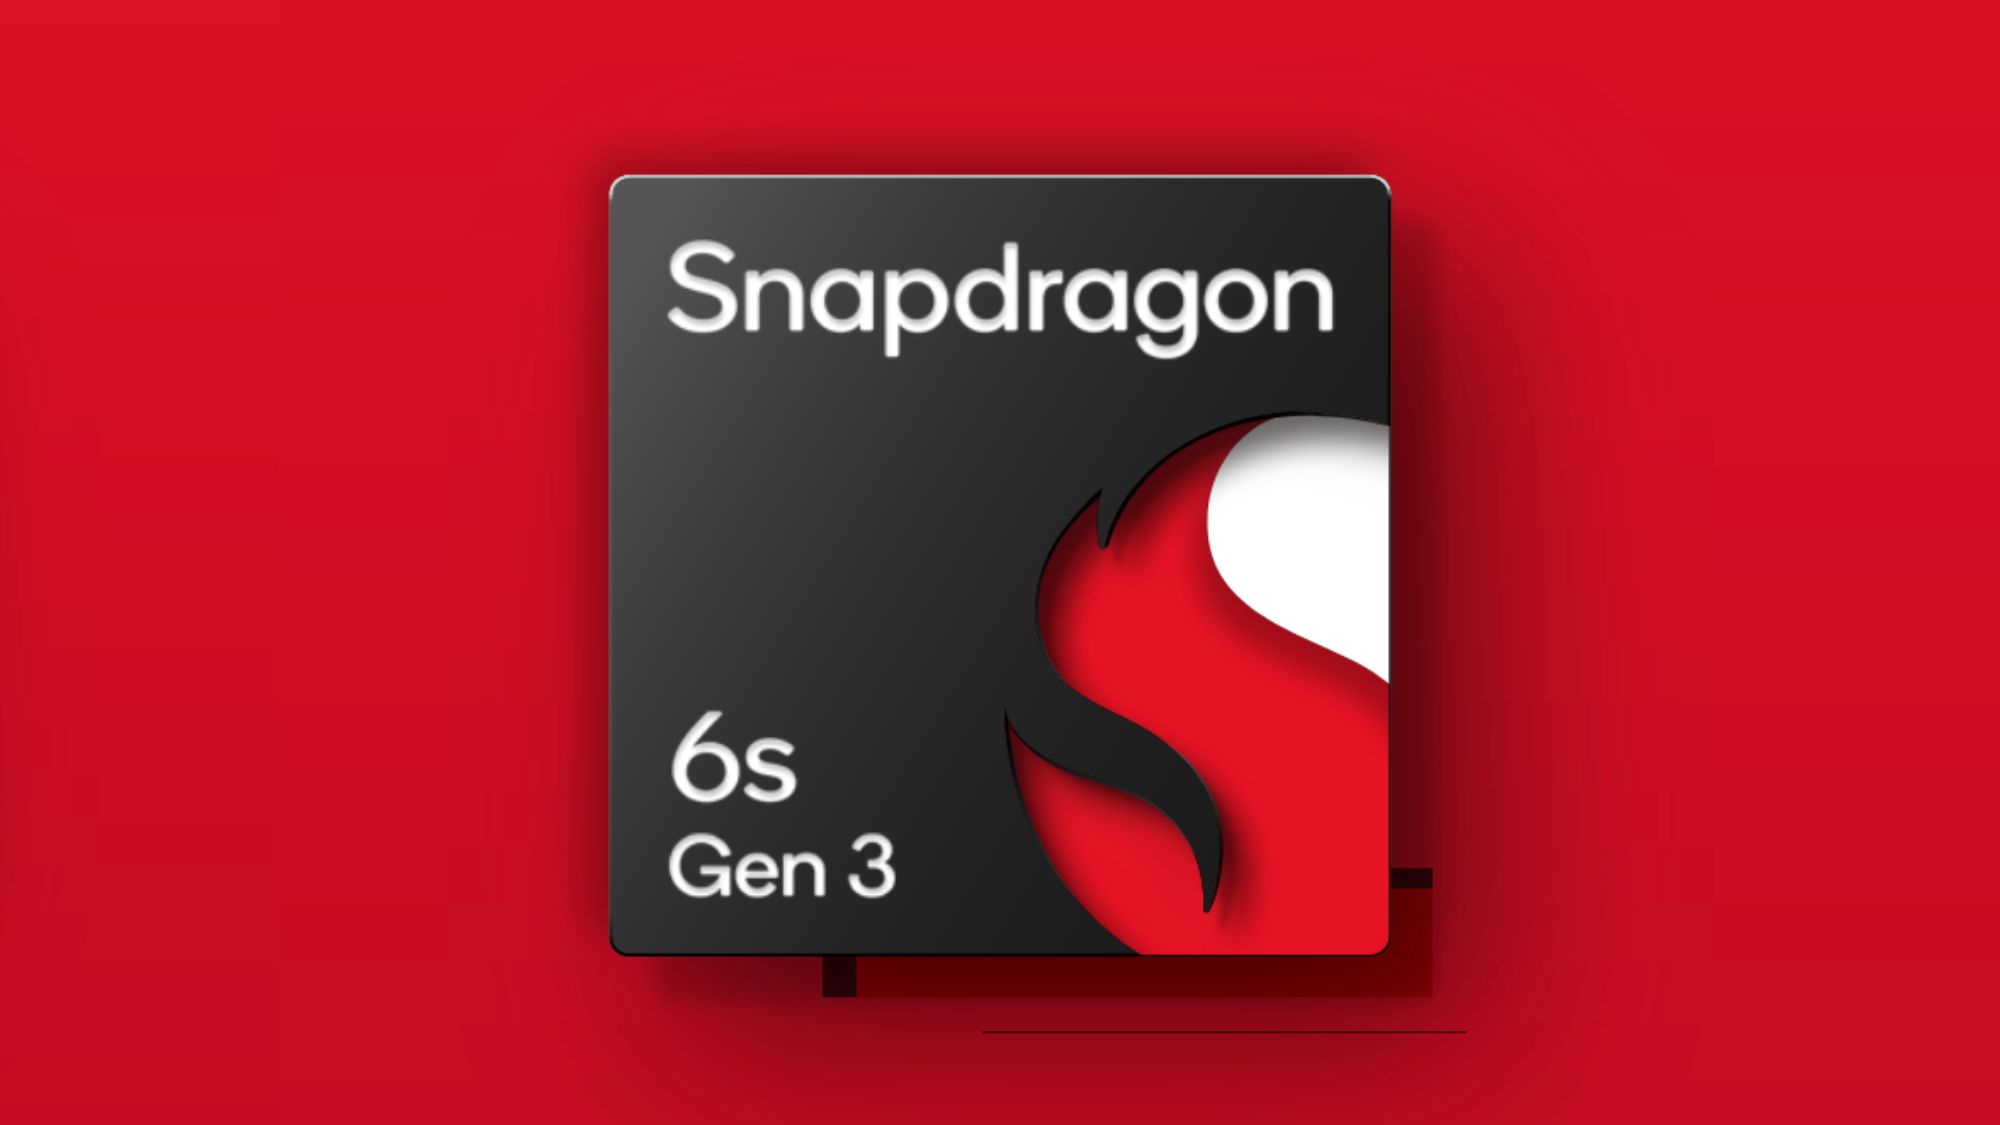 Qualcomm анонсирует SoC Snapdragon 6s Gen 3 под радаром